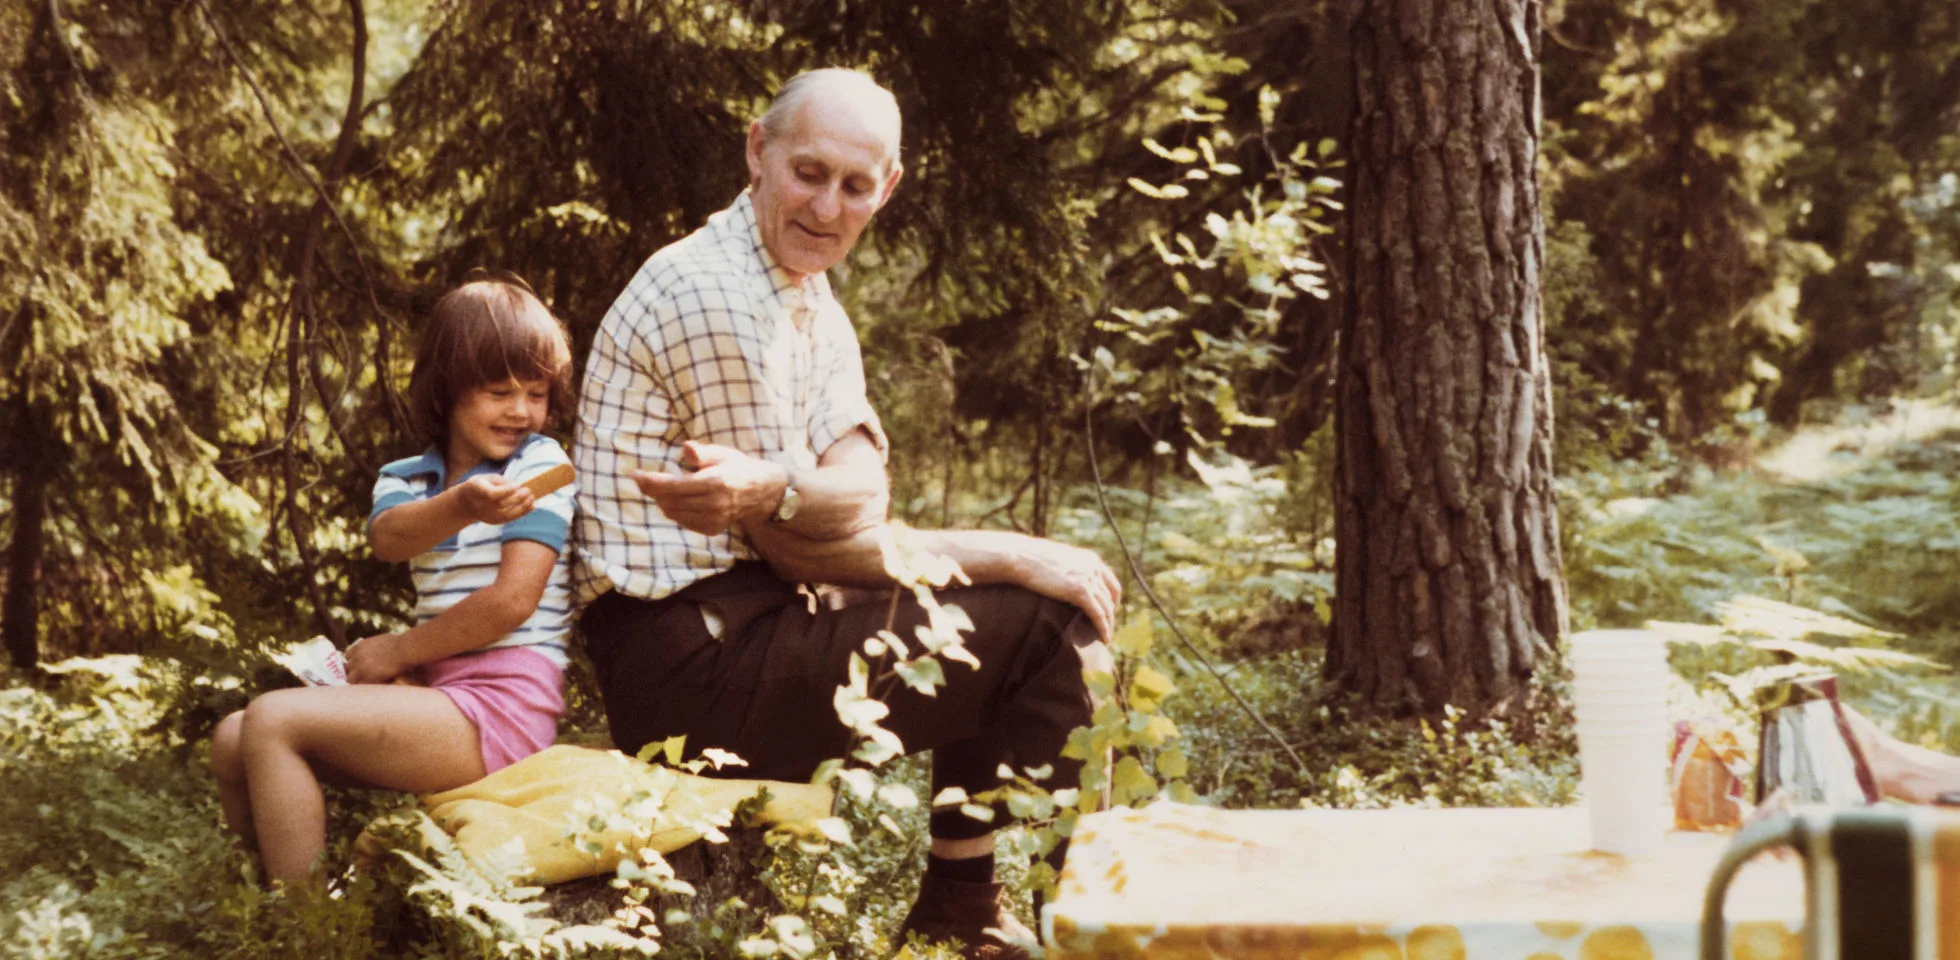 Sommarbild på Czeslaw Aredzki i en skog sittandes intill ett barn.